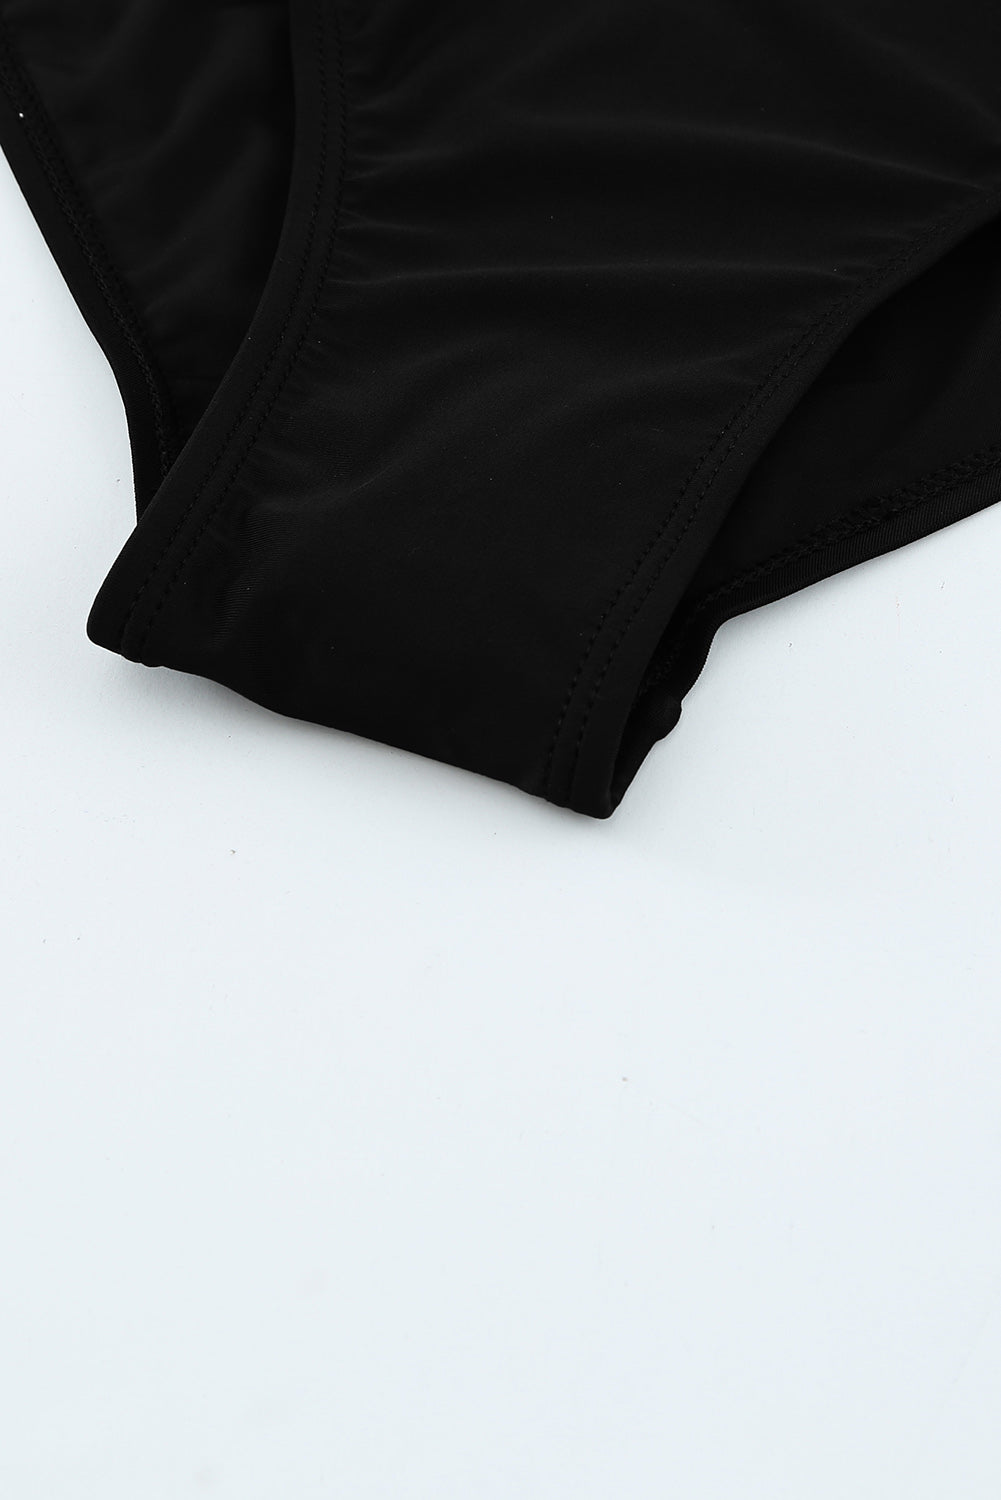 Jednodijelni kupaći kostim s crnim točkastim printom i volanima